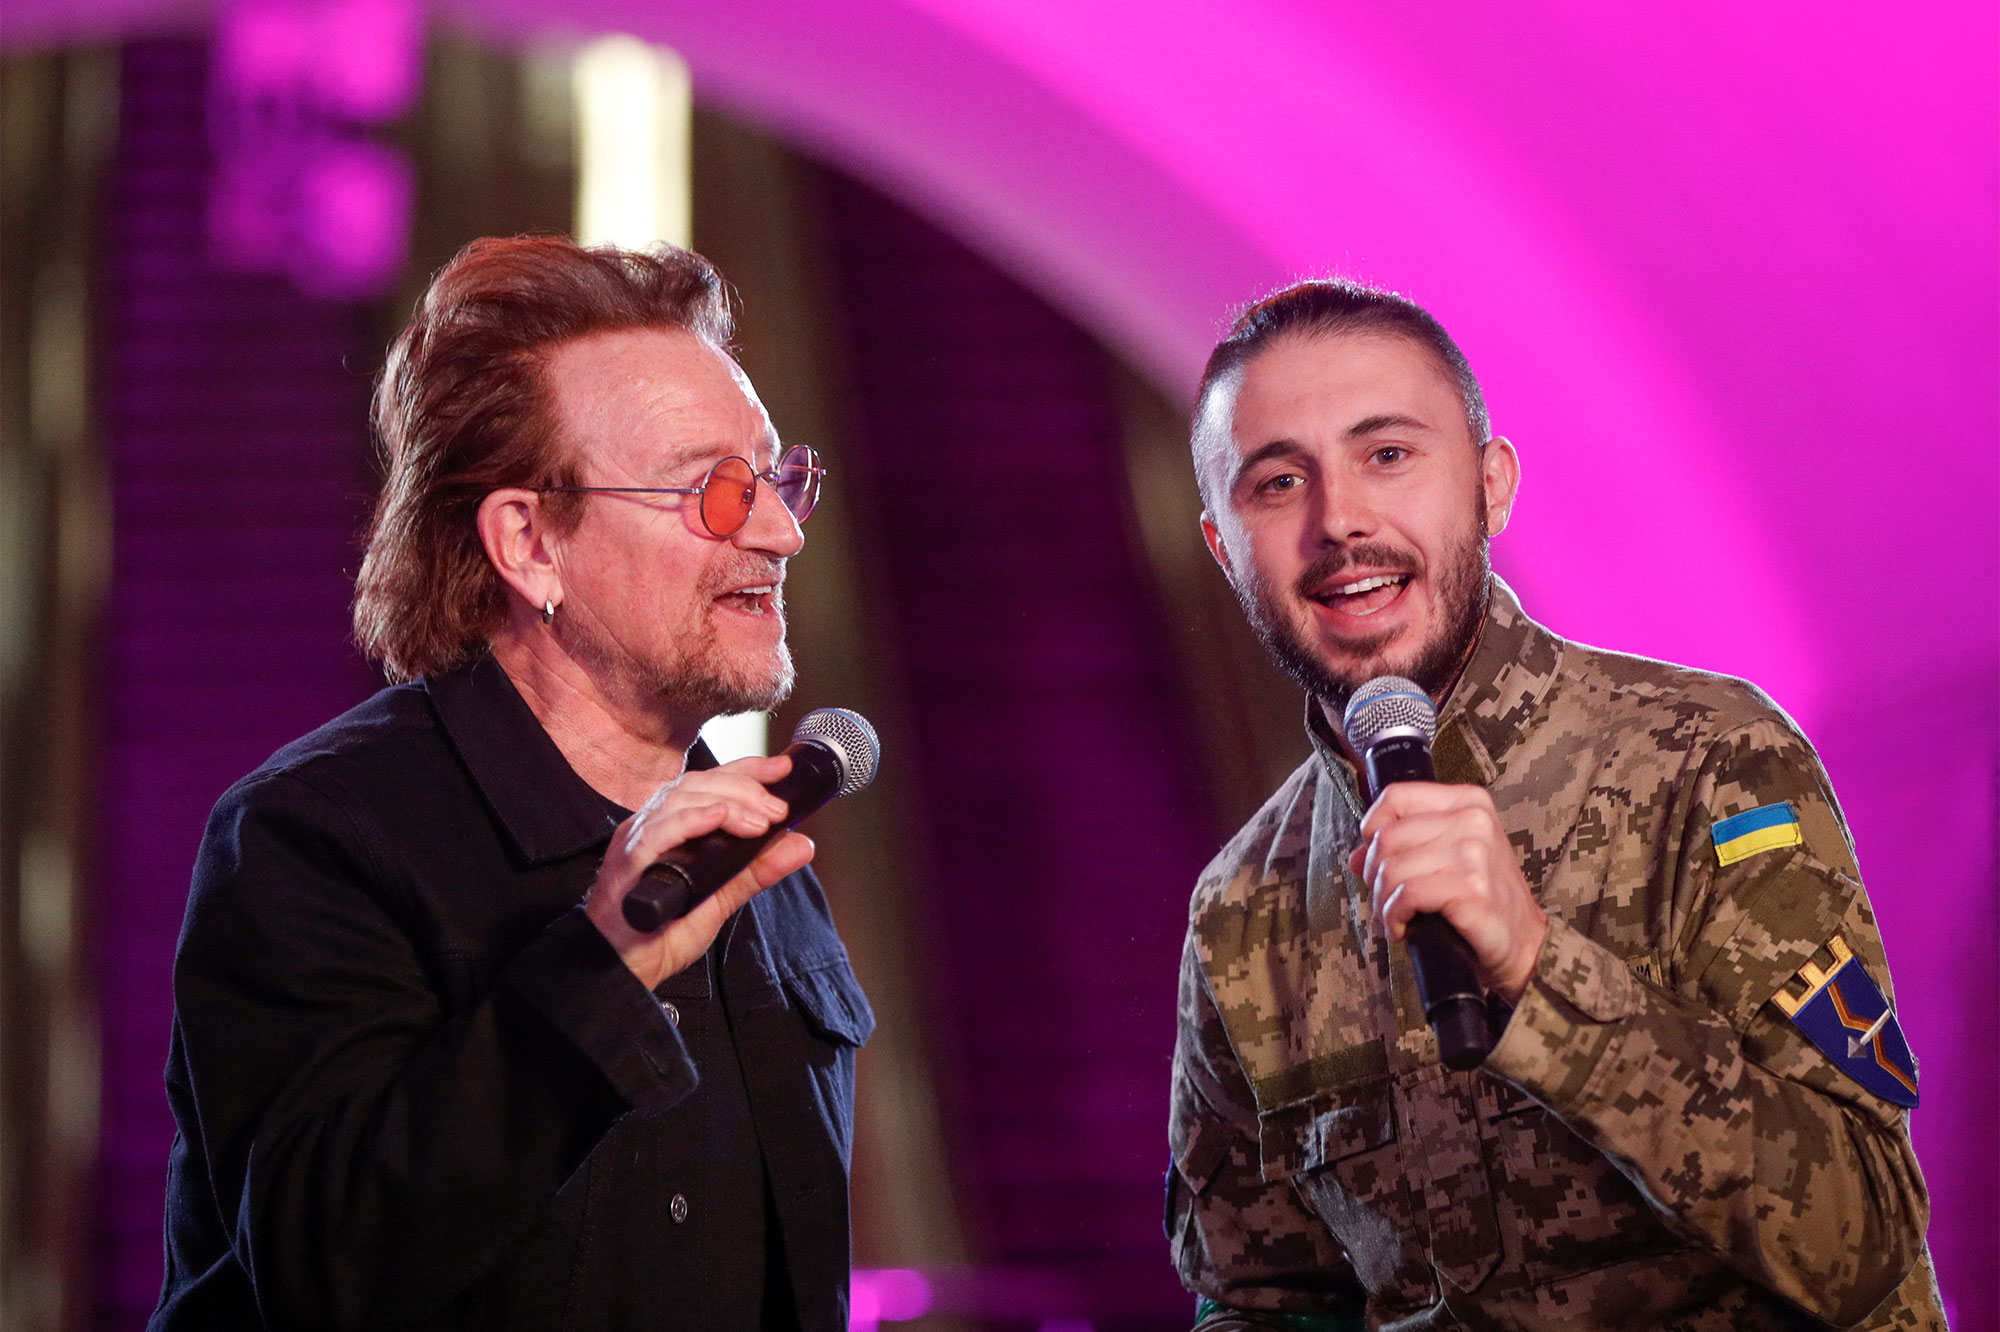 Le leader du groupe de rock U2 Bono et le militaire ukrainien, leader du groupe Antytila ​​Taras Topolia chantent lors d'une représentation pour les Ukrainiens à l'intérieur d'une station de métro, alors que l'attaque de la Russie contre l'Ukraine se poursuit, à Kiev.